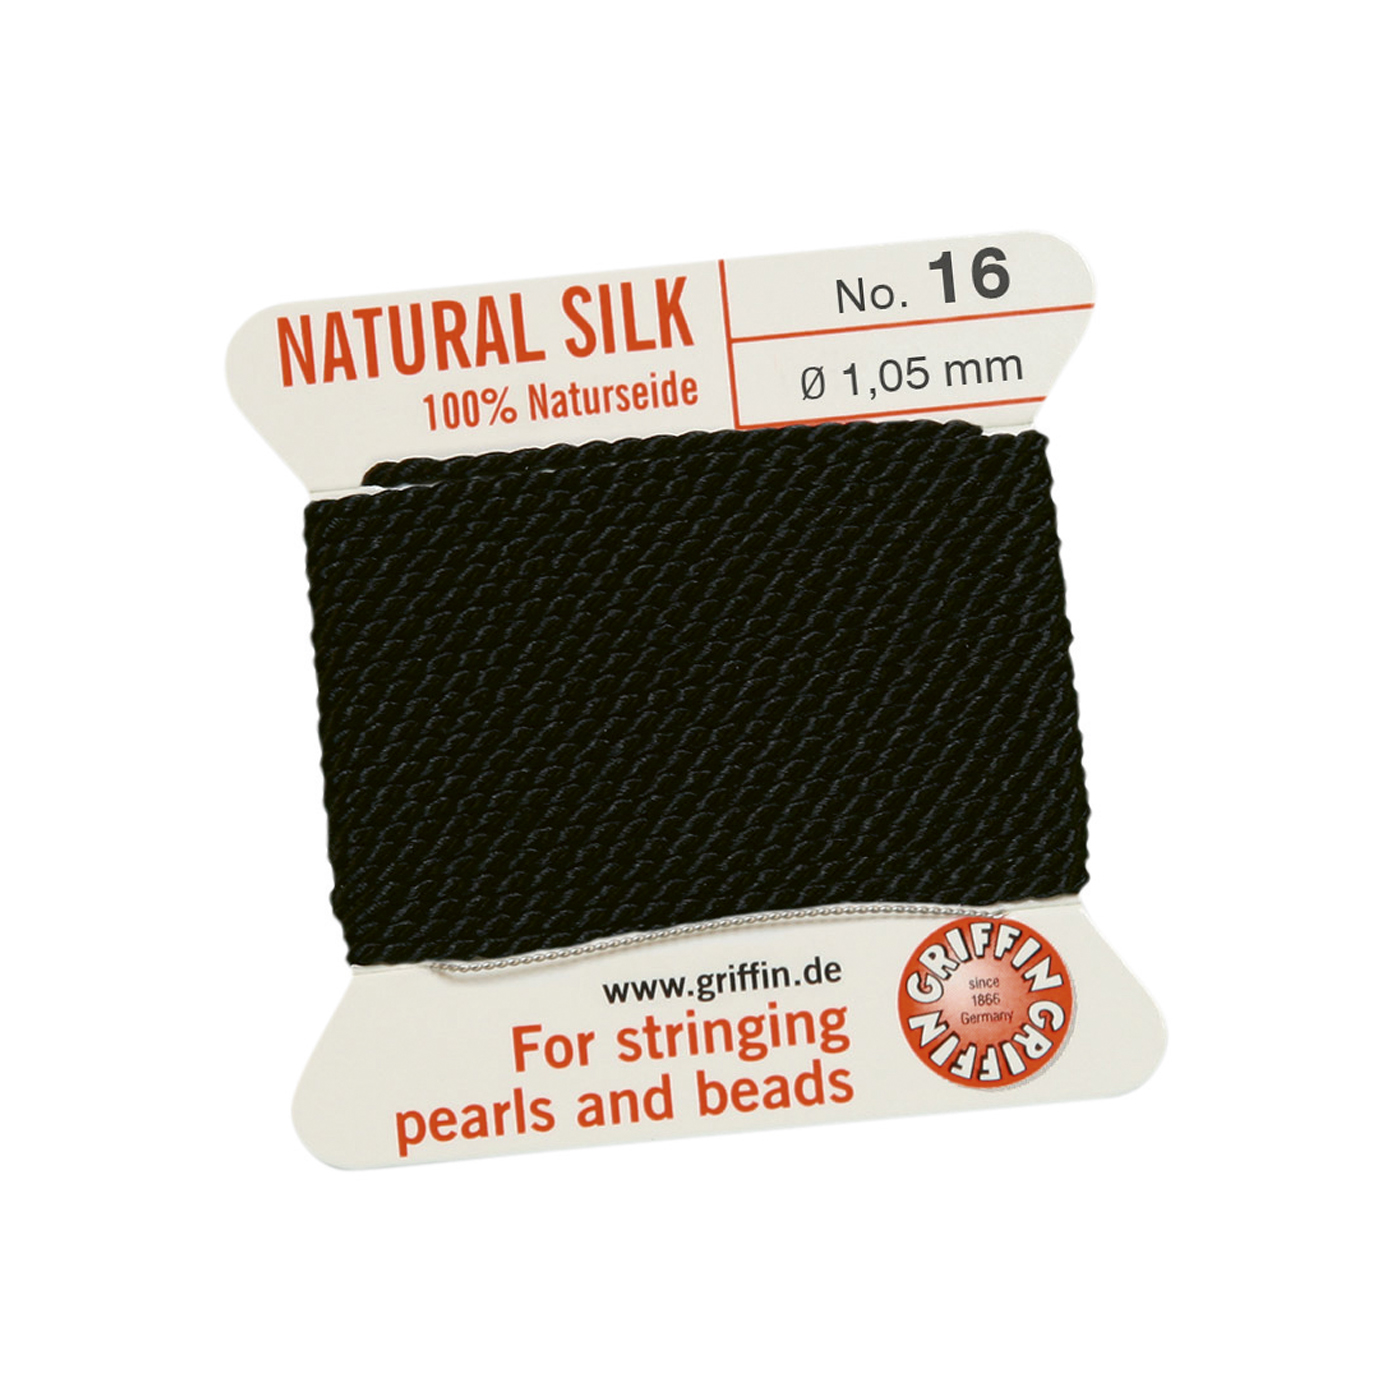 Bead Cord 100% Natural Silk, Black, No. 16 - 2 m